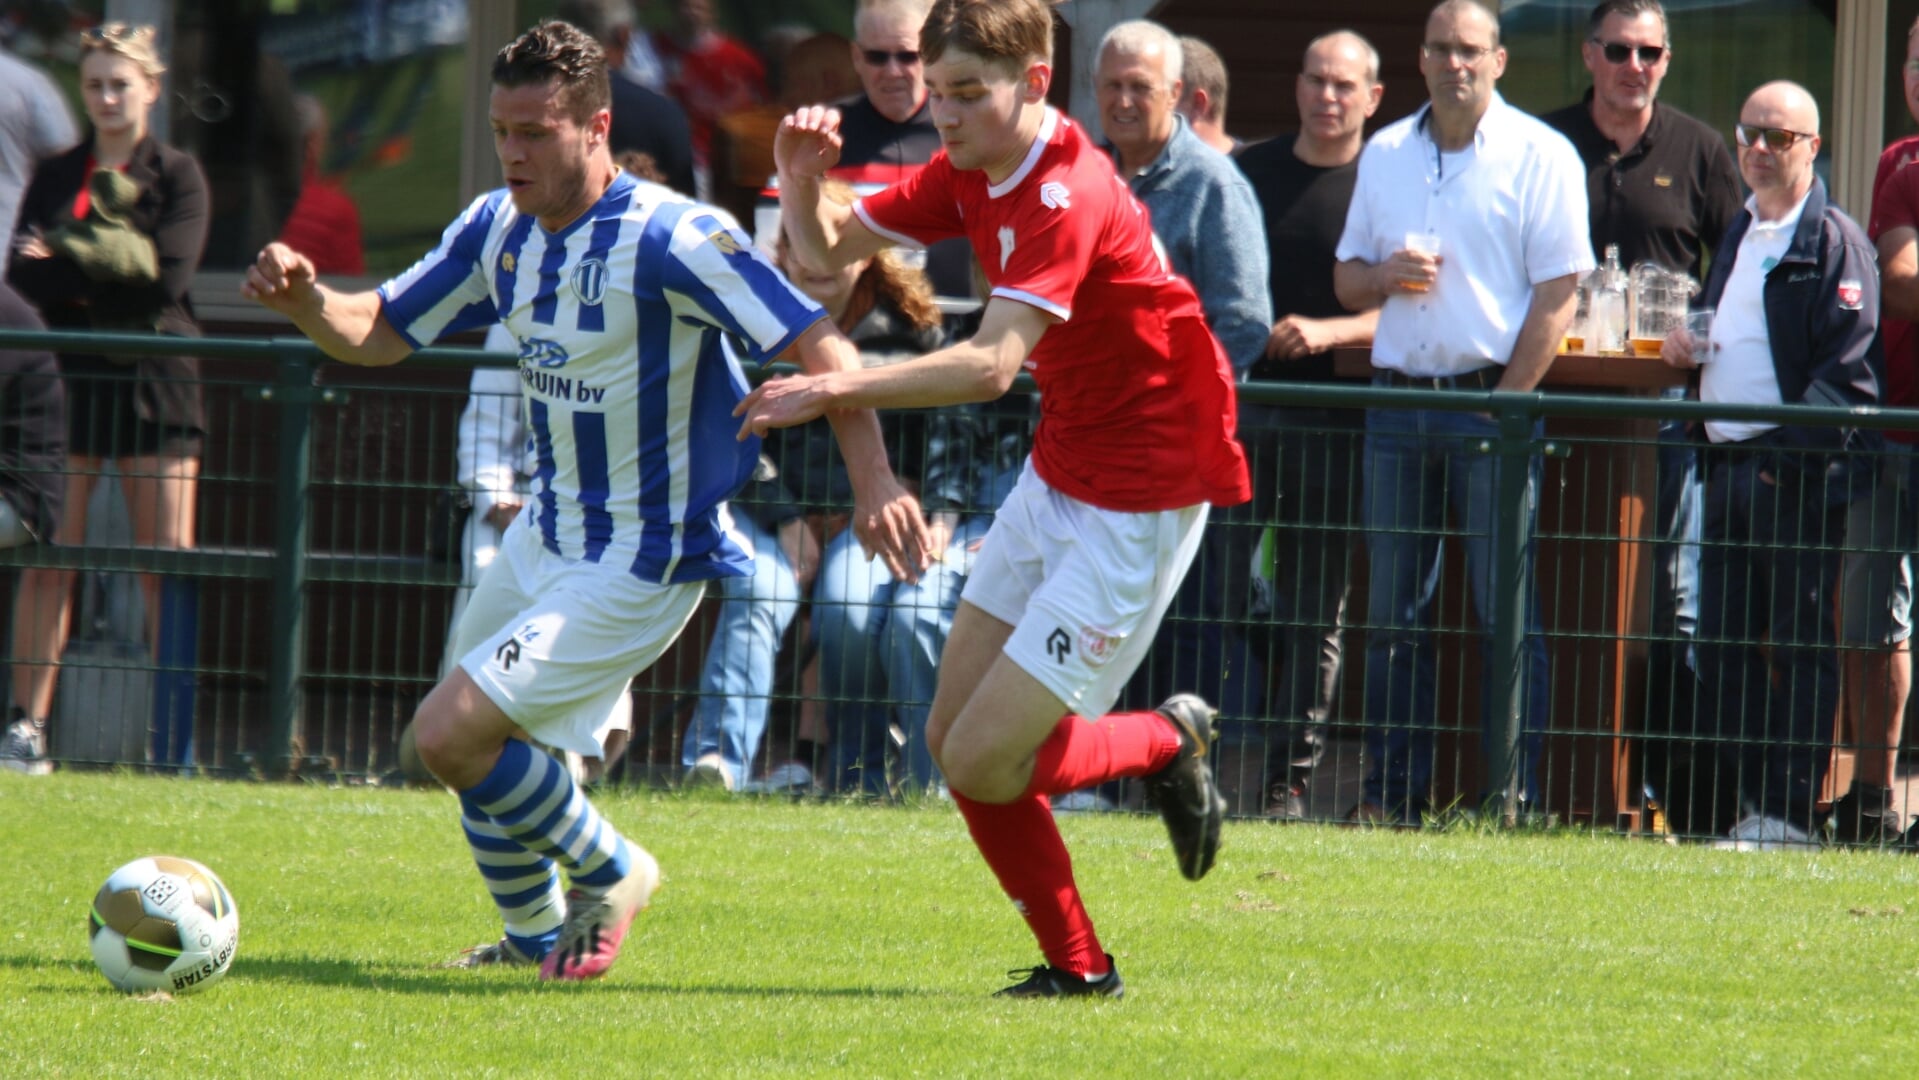 Jesse Langendoen zorgde met zijn goal voor een kostbaar punt voor Zwartewaal tegen kampioen Stellendam. (Foto: Wil van Balen).